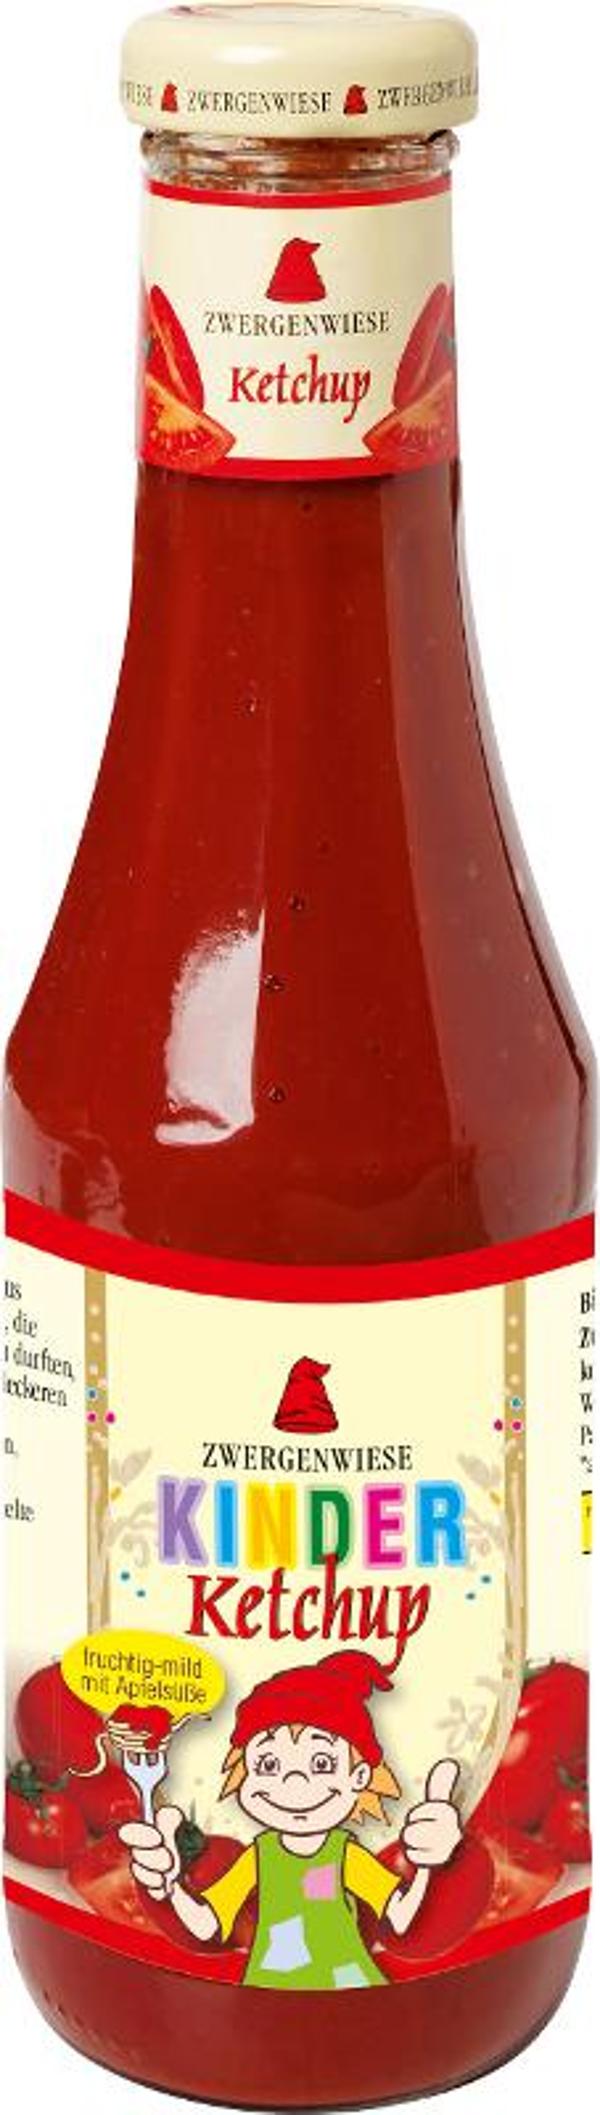 Produktfoto zu Kinder Ketchup mit Apfelsüße